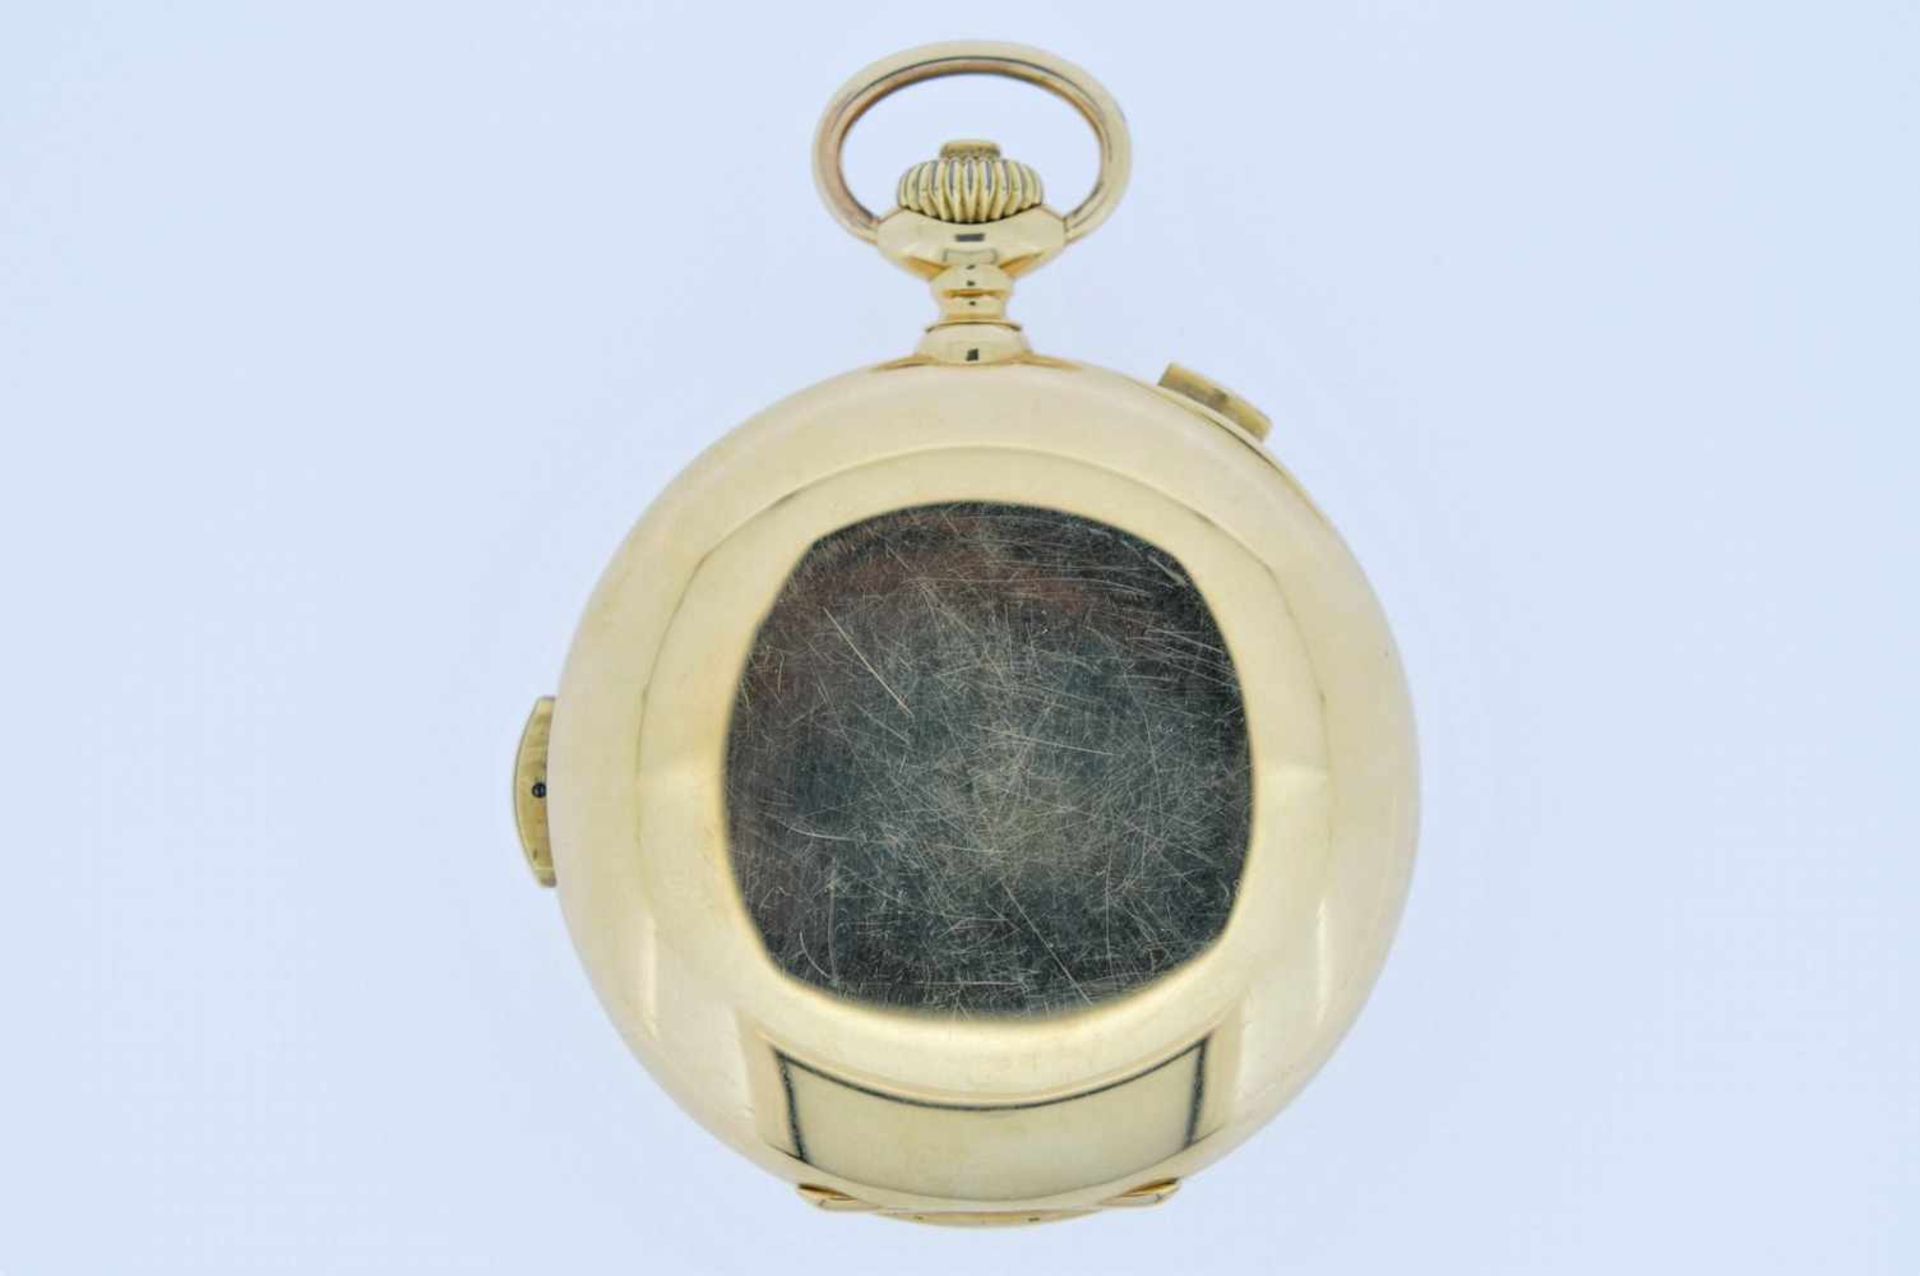 Minutenrepetierer Goldene 18 karätige Taschenuhr mit Minutenschlagwerk, kleiner Sekunde und - Bild 3 aus 3